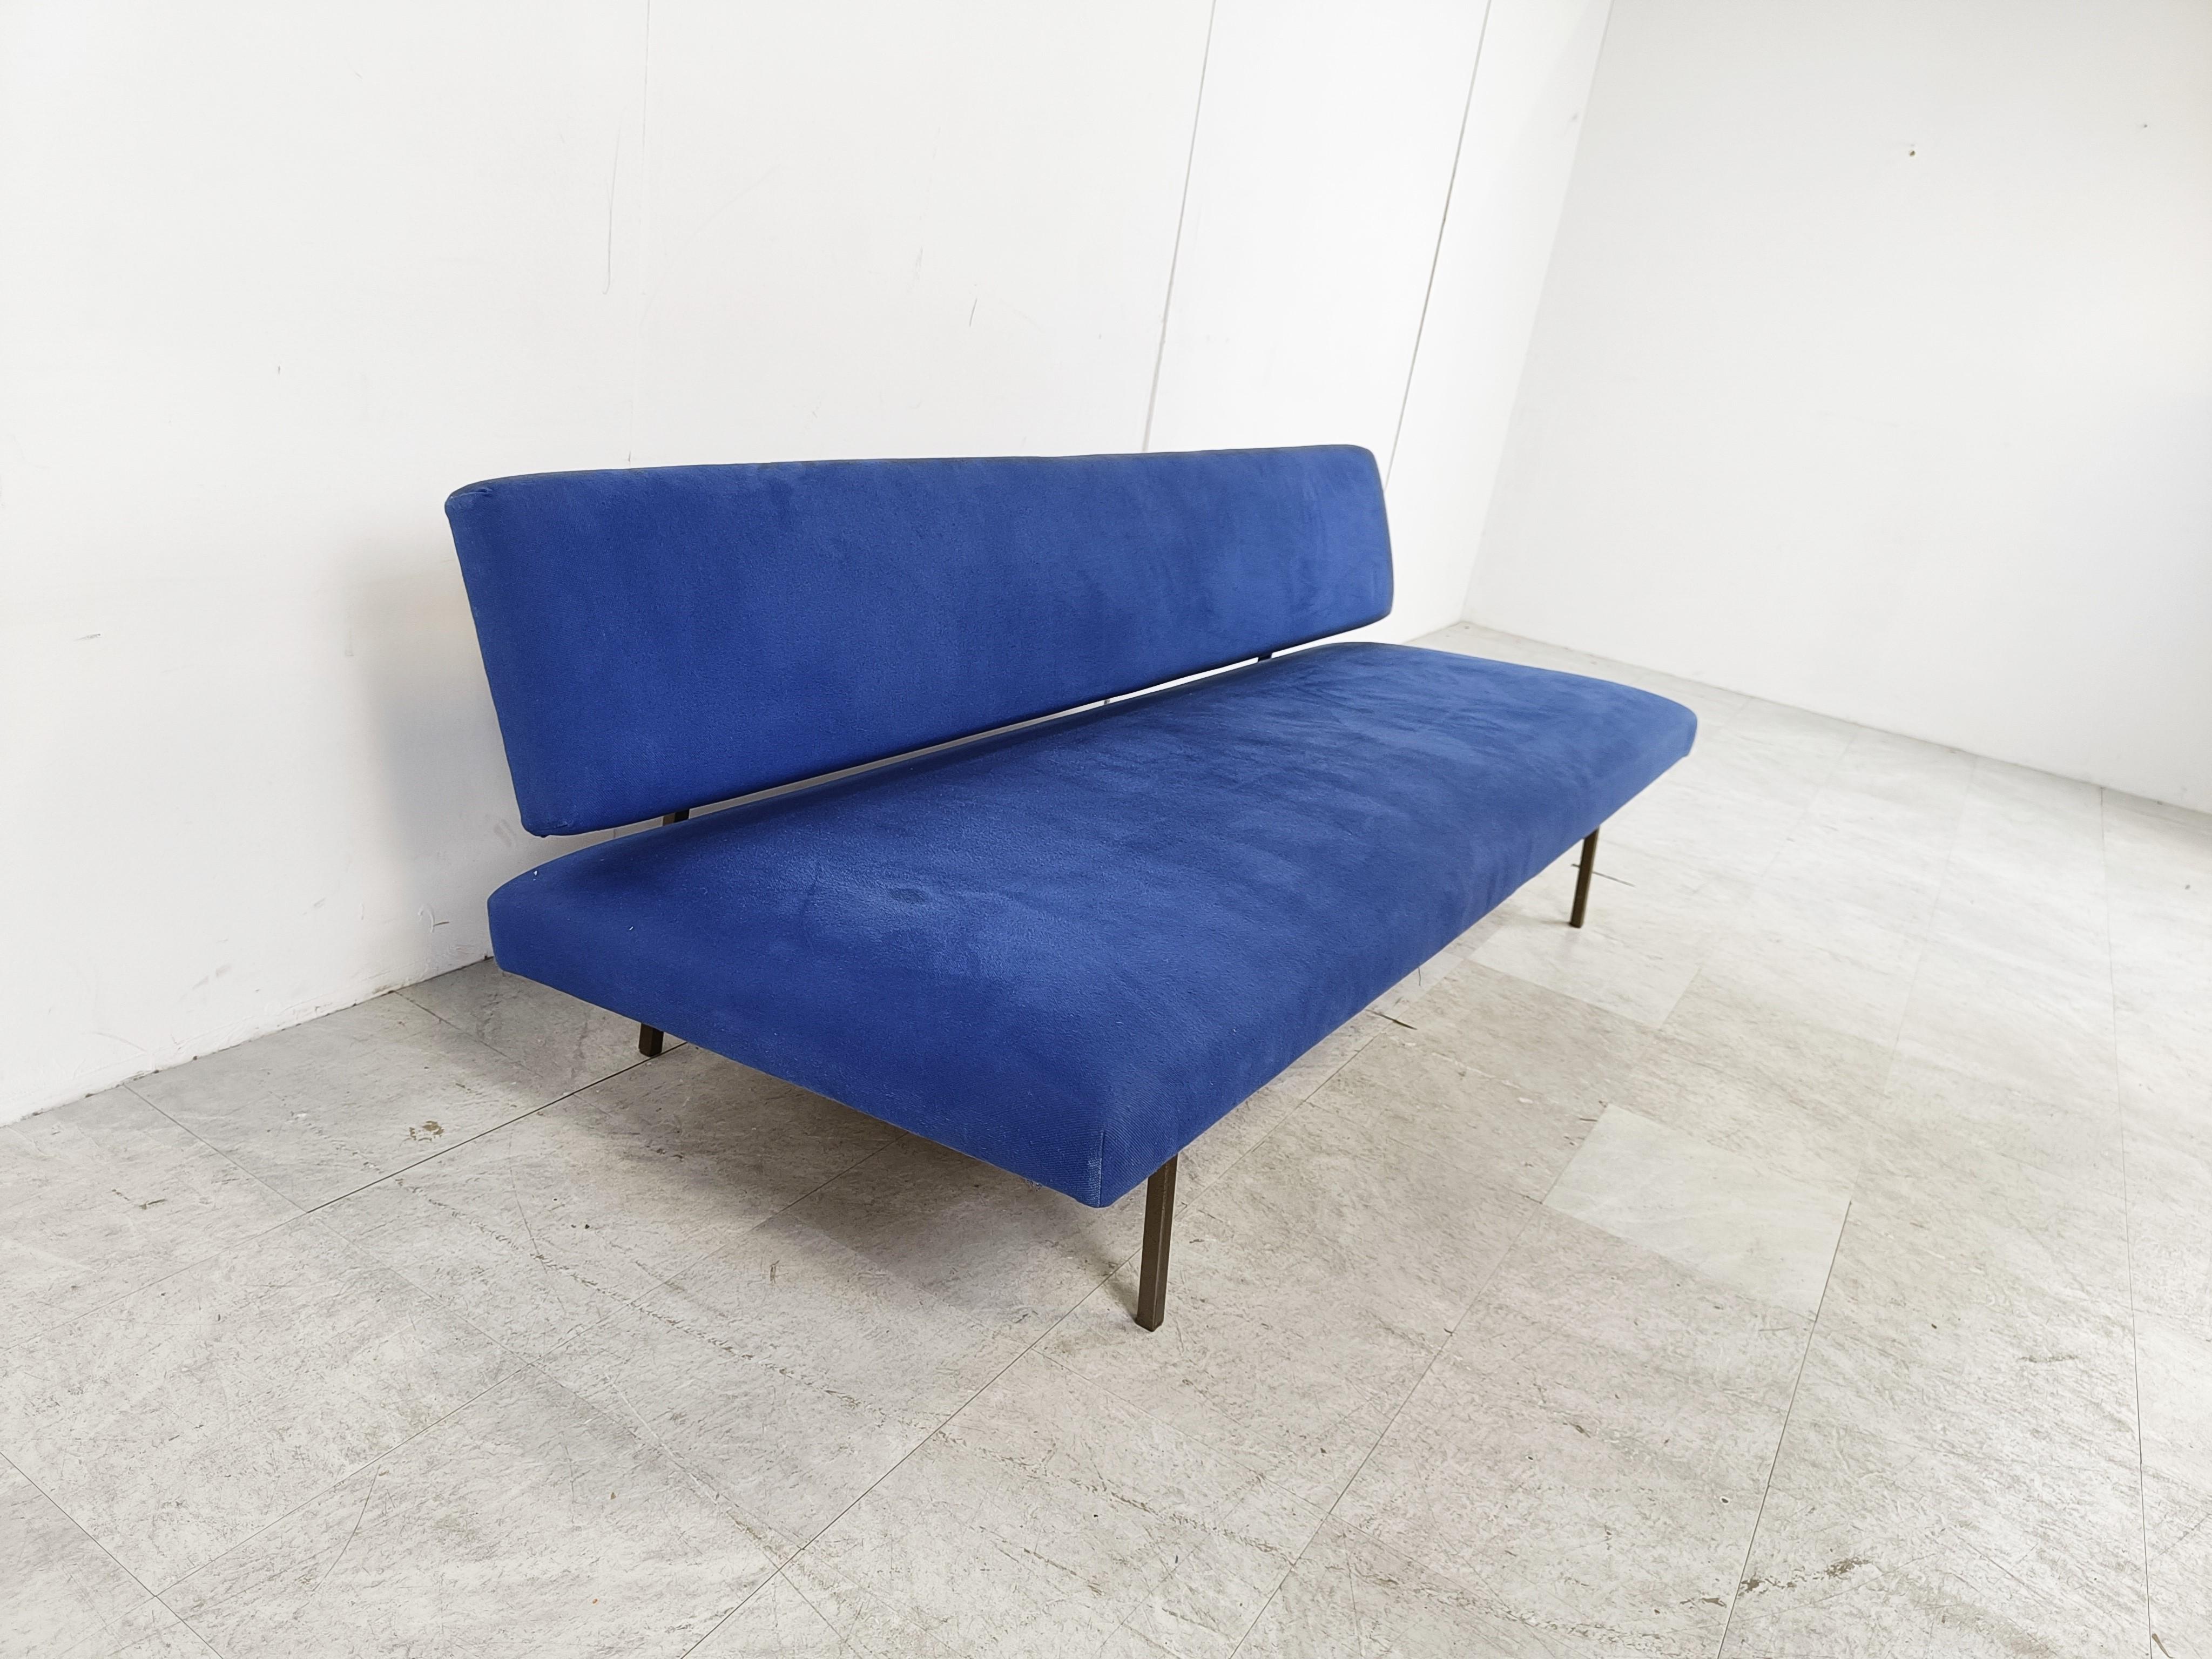 Modernistisches Daybed, entworfen von Rob Parry für Gelderland.

Schöner blauer Stoff mit dickem Schaumstoff, der viel Komfort bietet. Schwarzer Metallrahmen.

Sie können die Sitzfläche ganz einfach herausschieben und so das Sofa in eine Liege